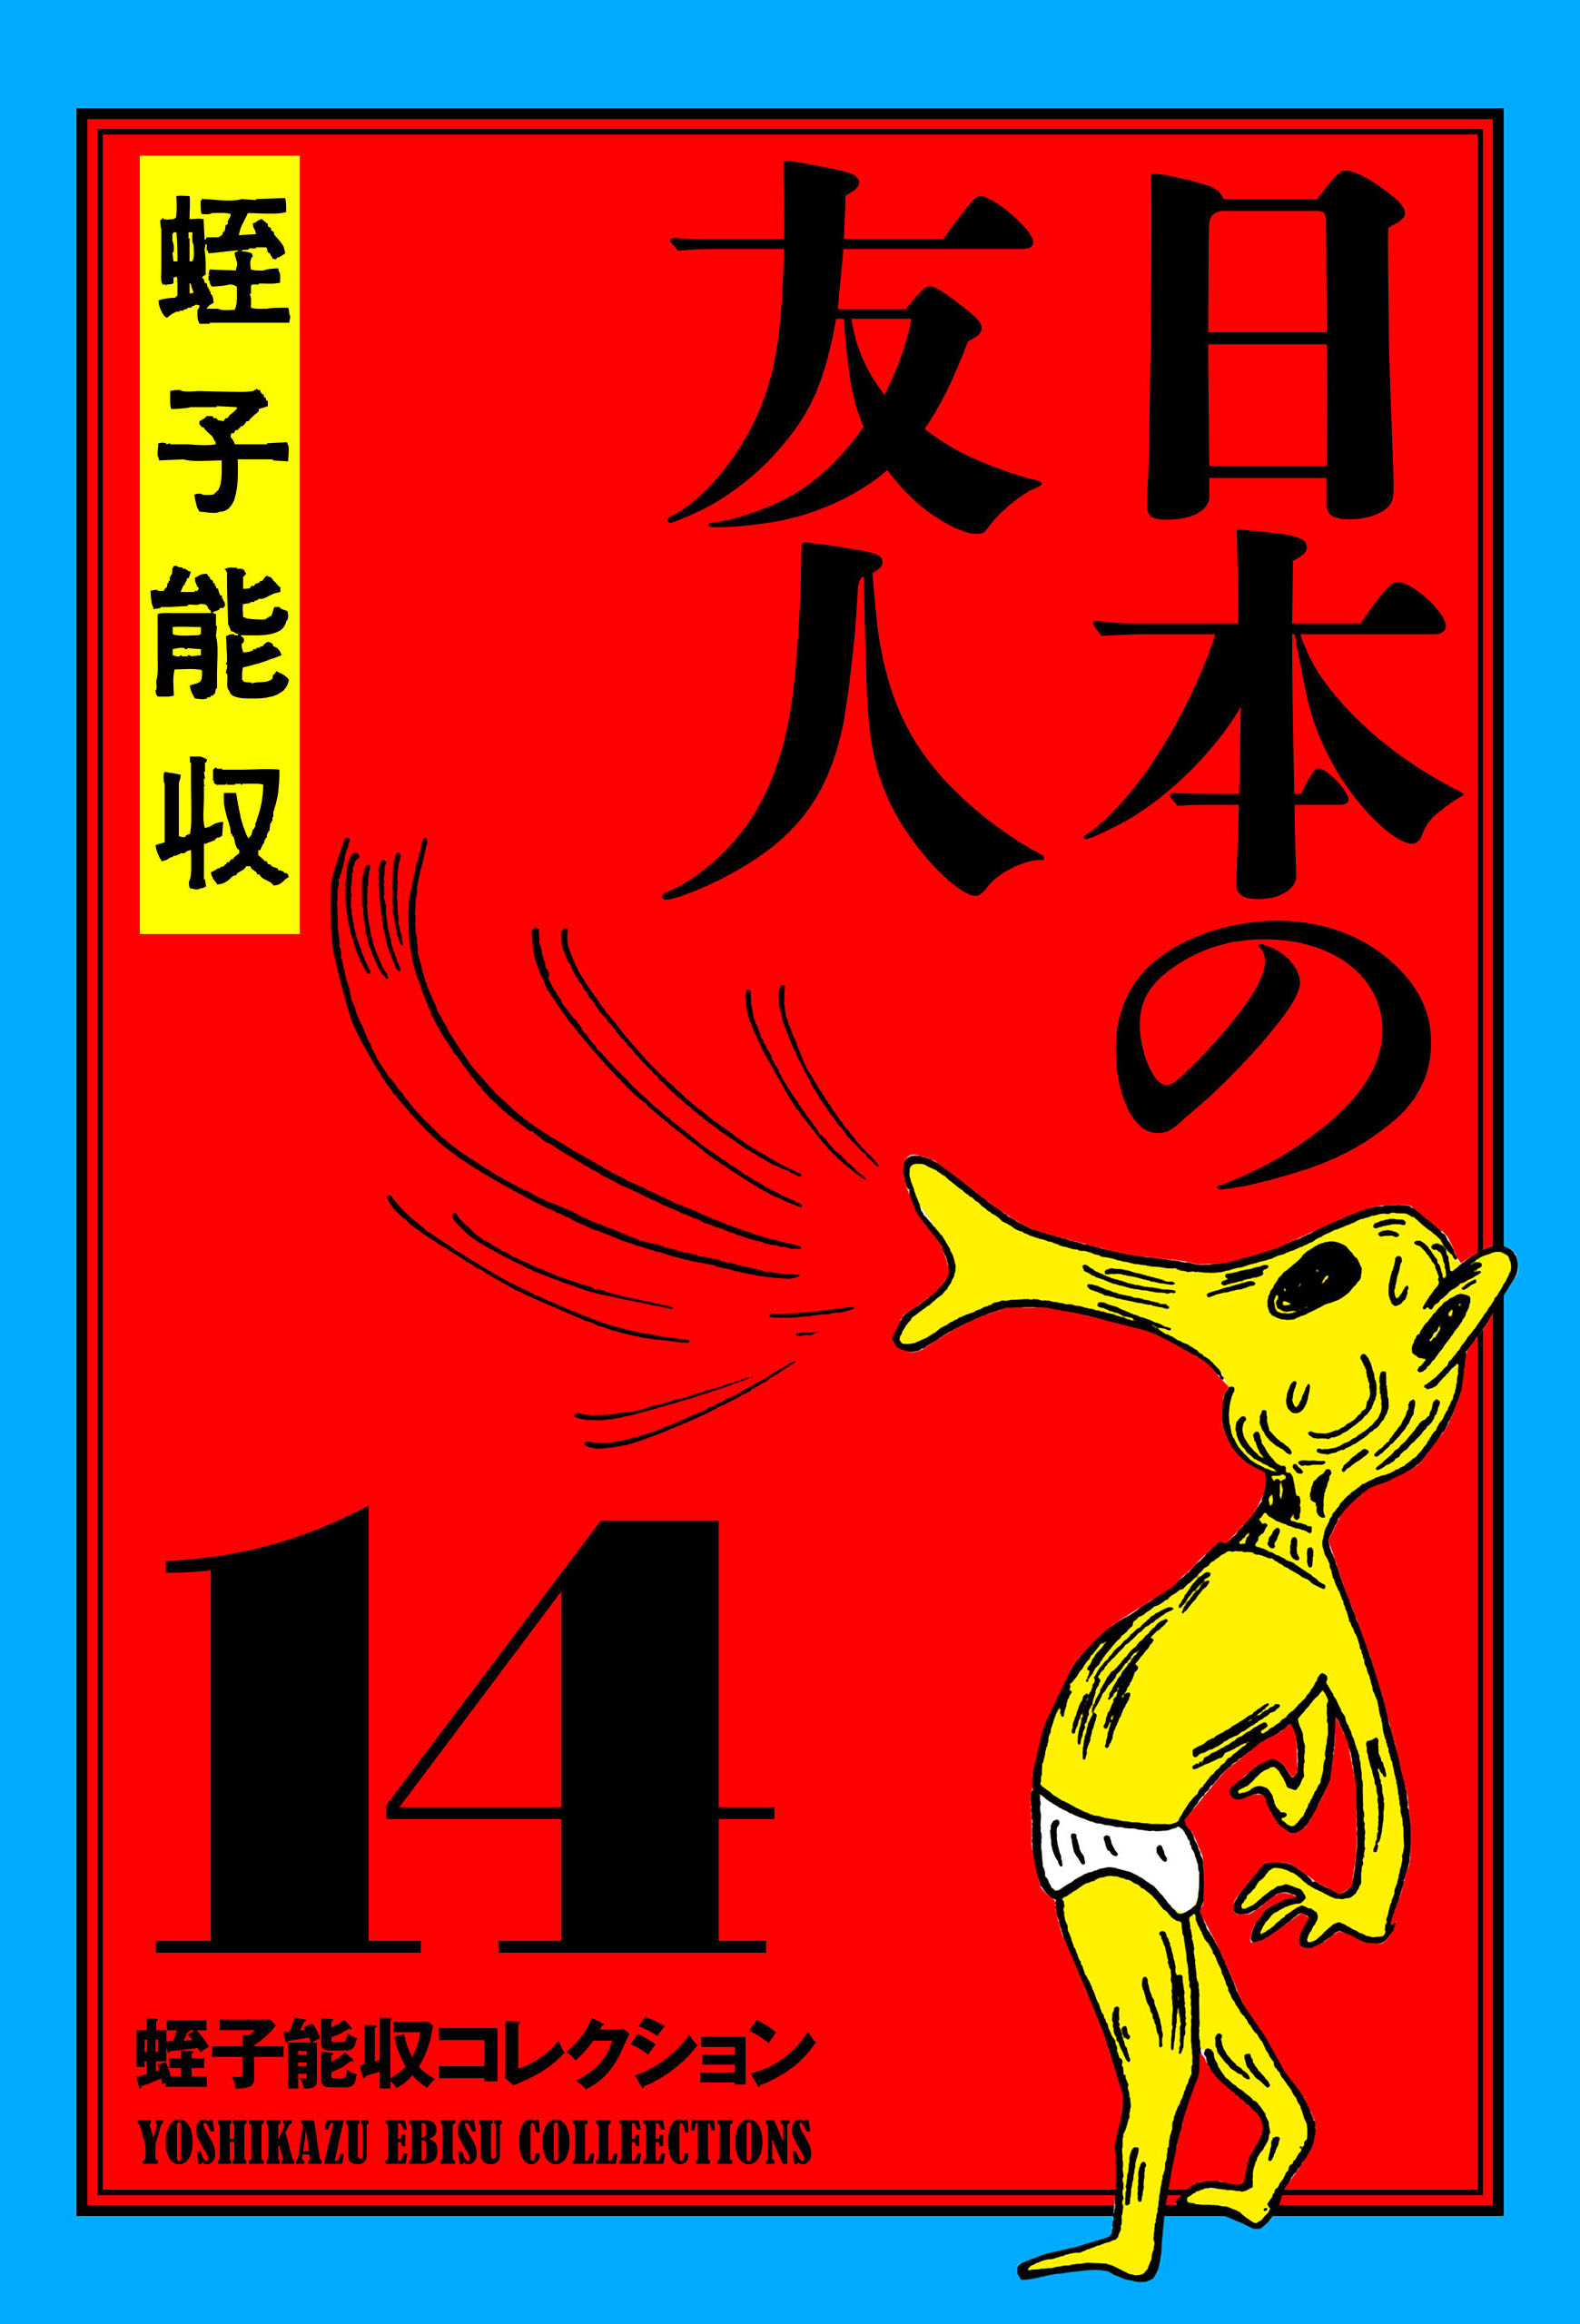 AKIRA 第120話 最終回掲載 ヤングマガジン 1990年6月25日号 NO.28 